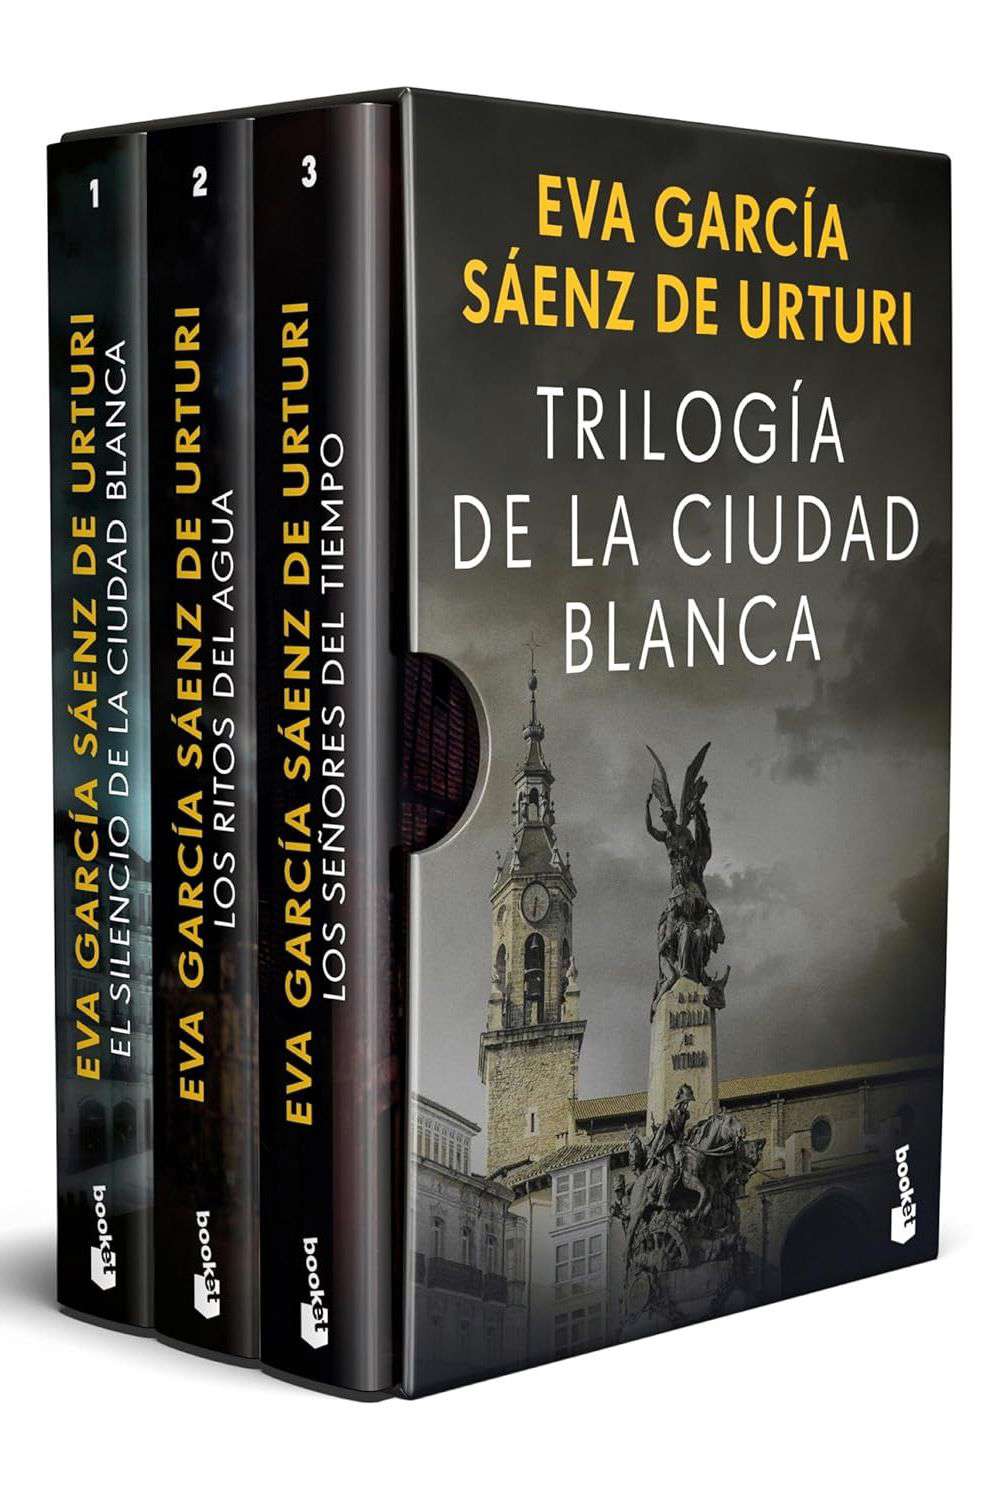 'Trilogía de la Ciudad Blanca' de Eva García Sáenz de Urturi